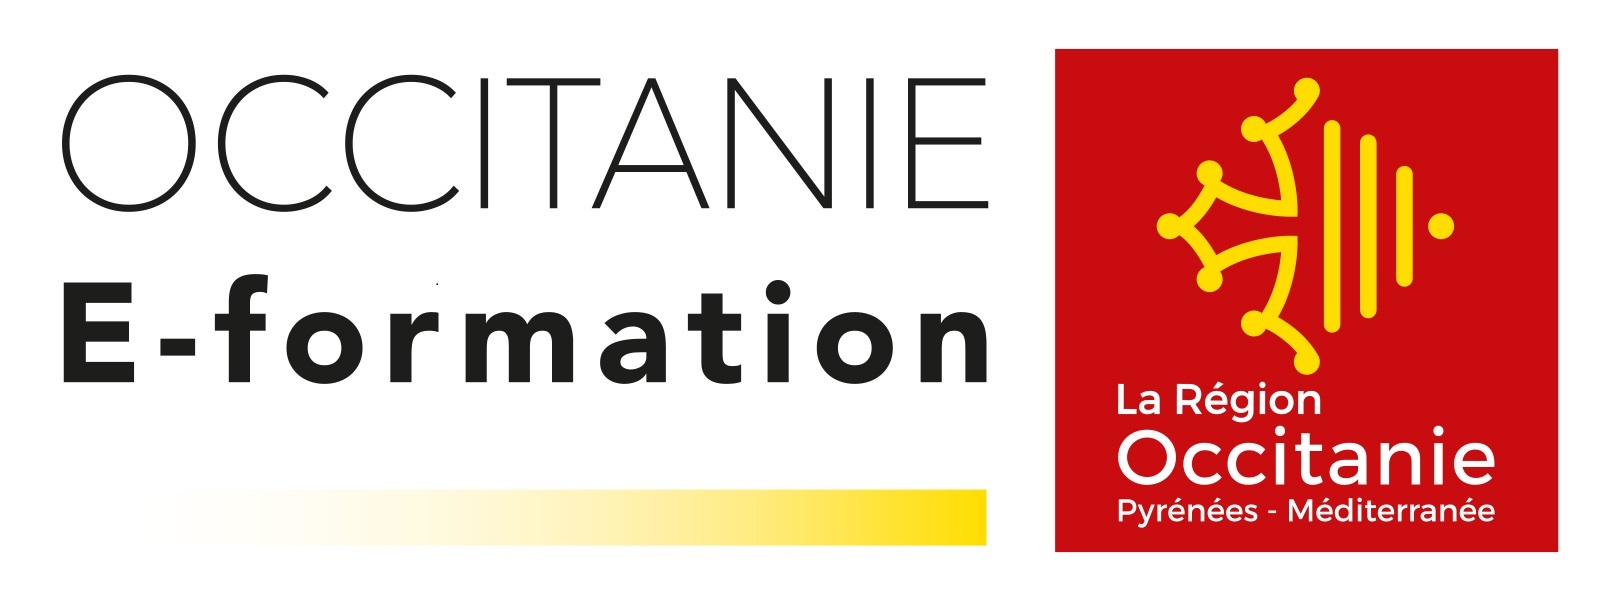 Occitanie E-Formation